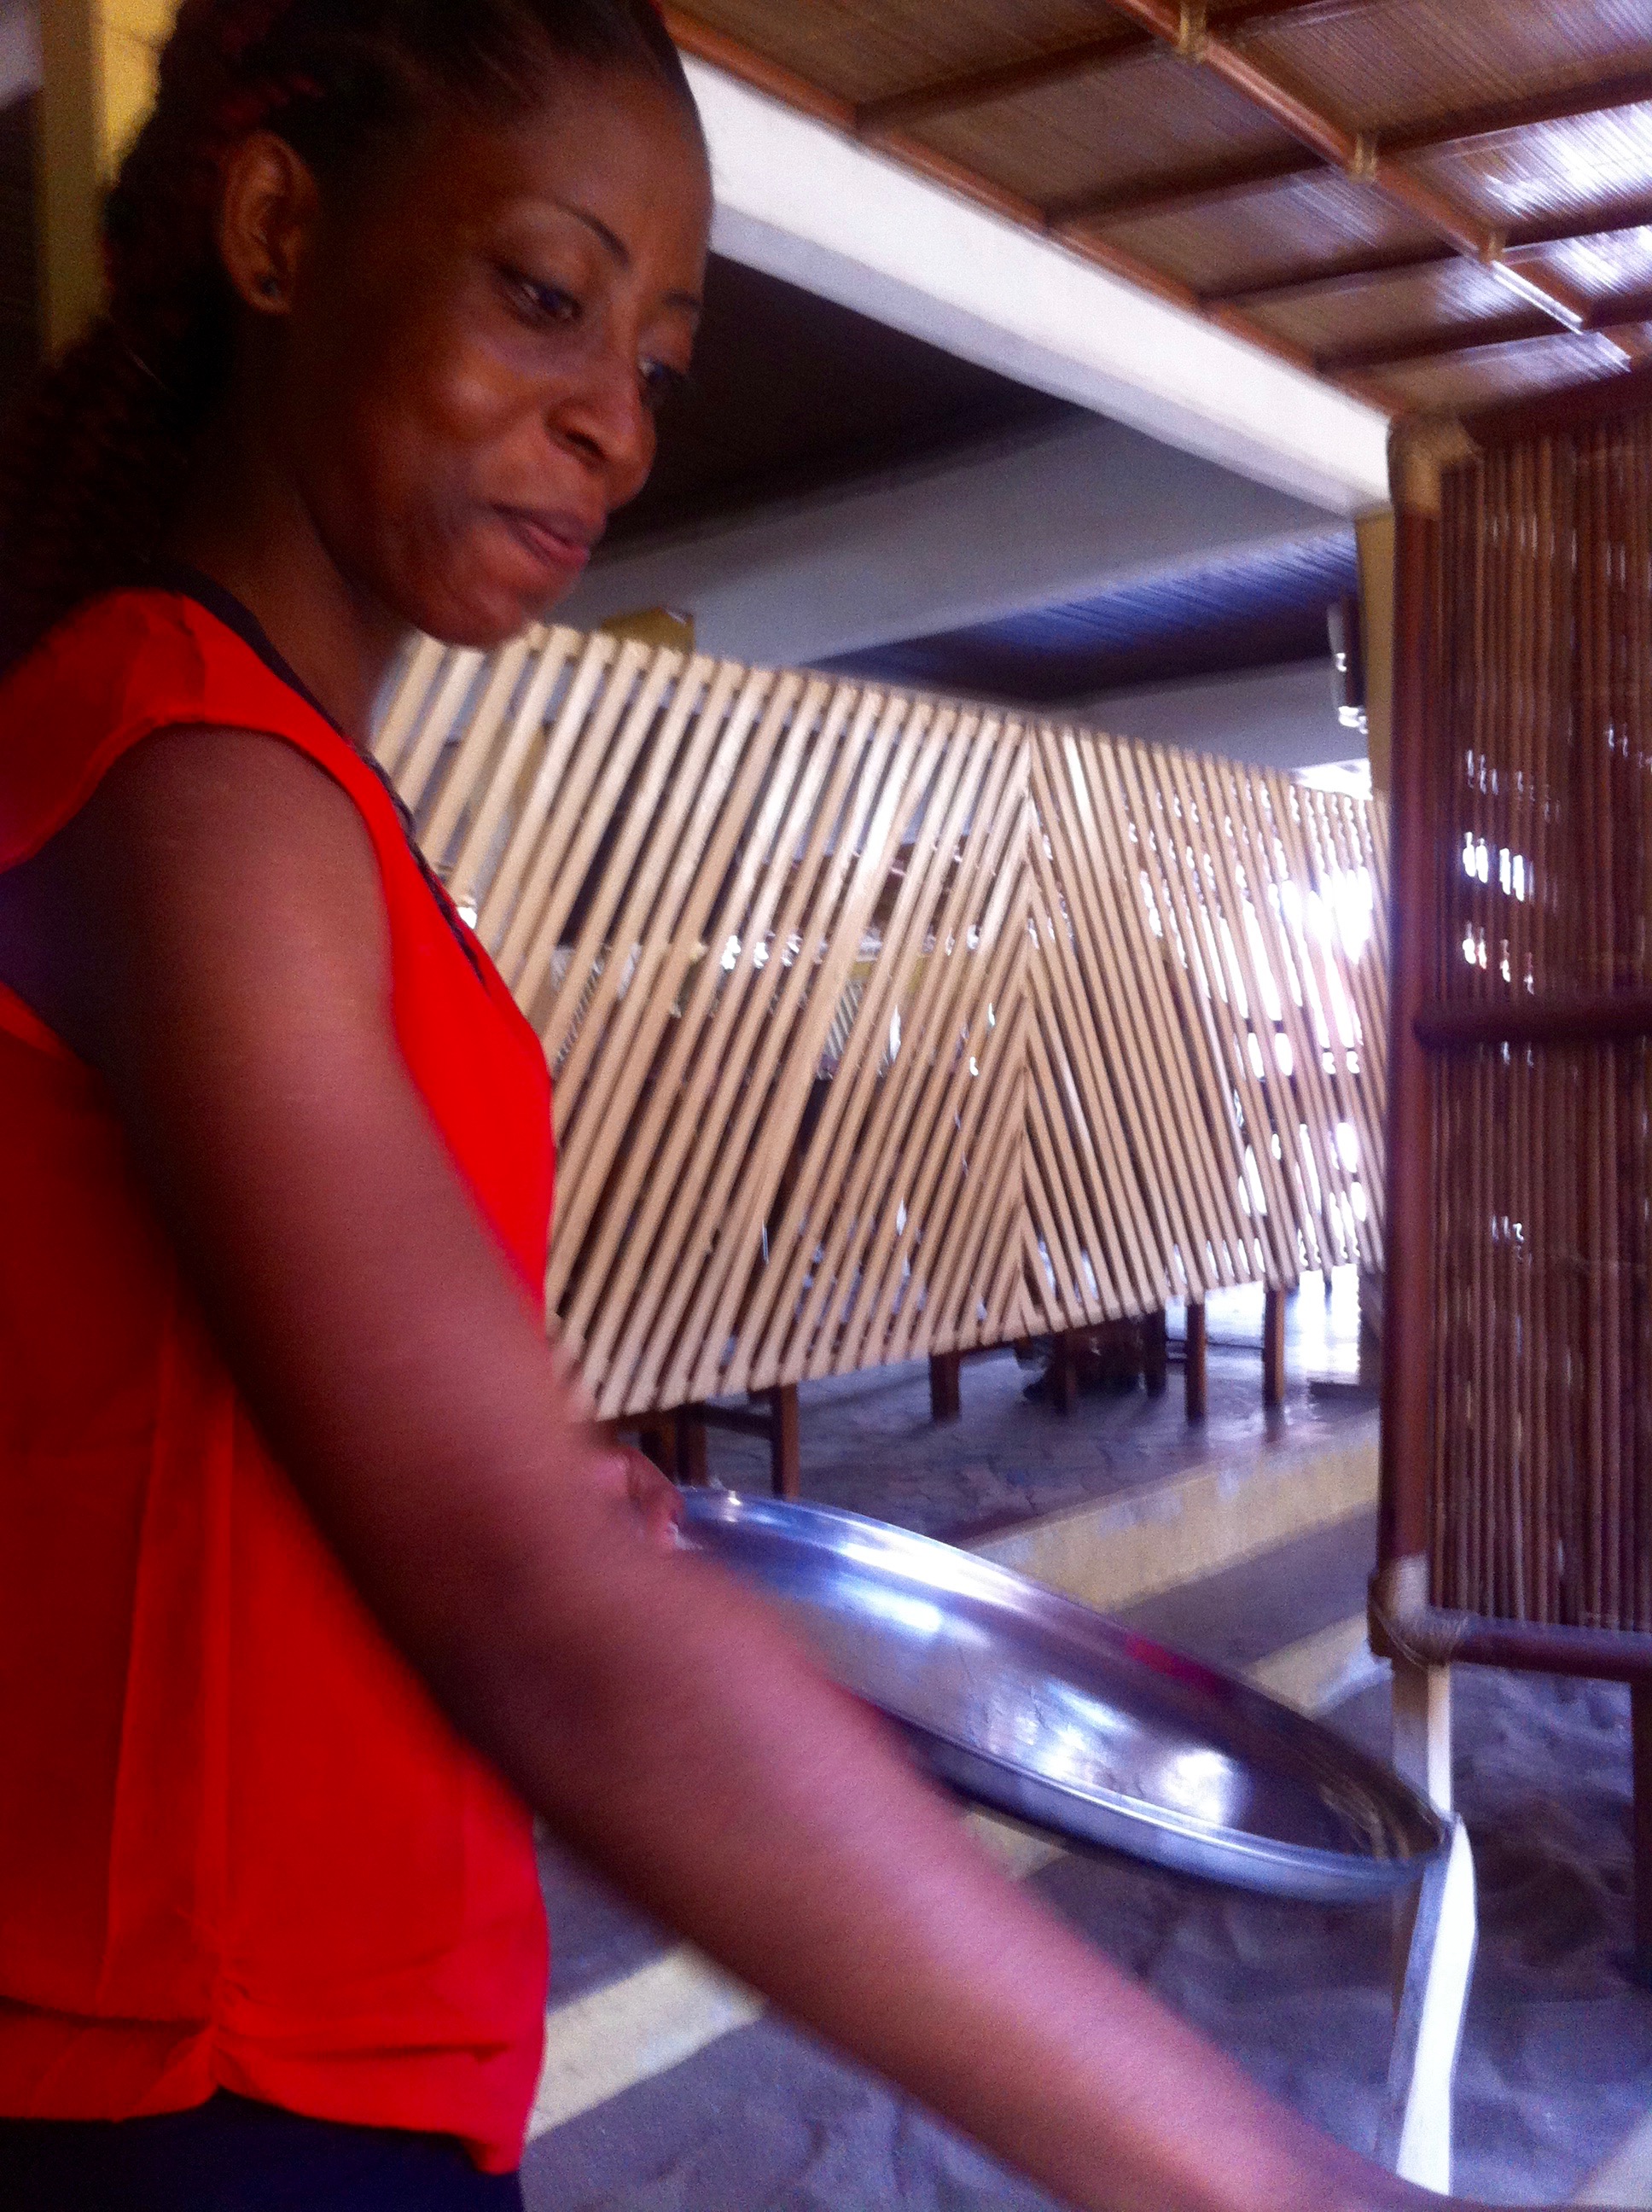 Serving buka food in Cotonou, Benin.